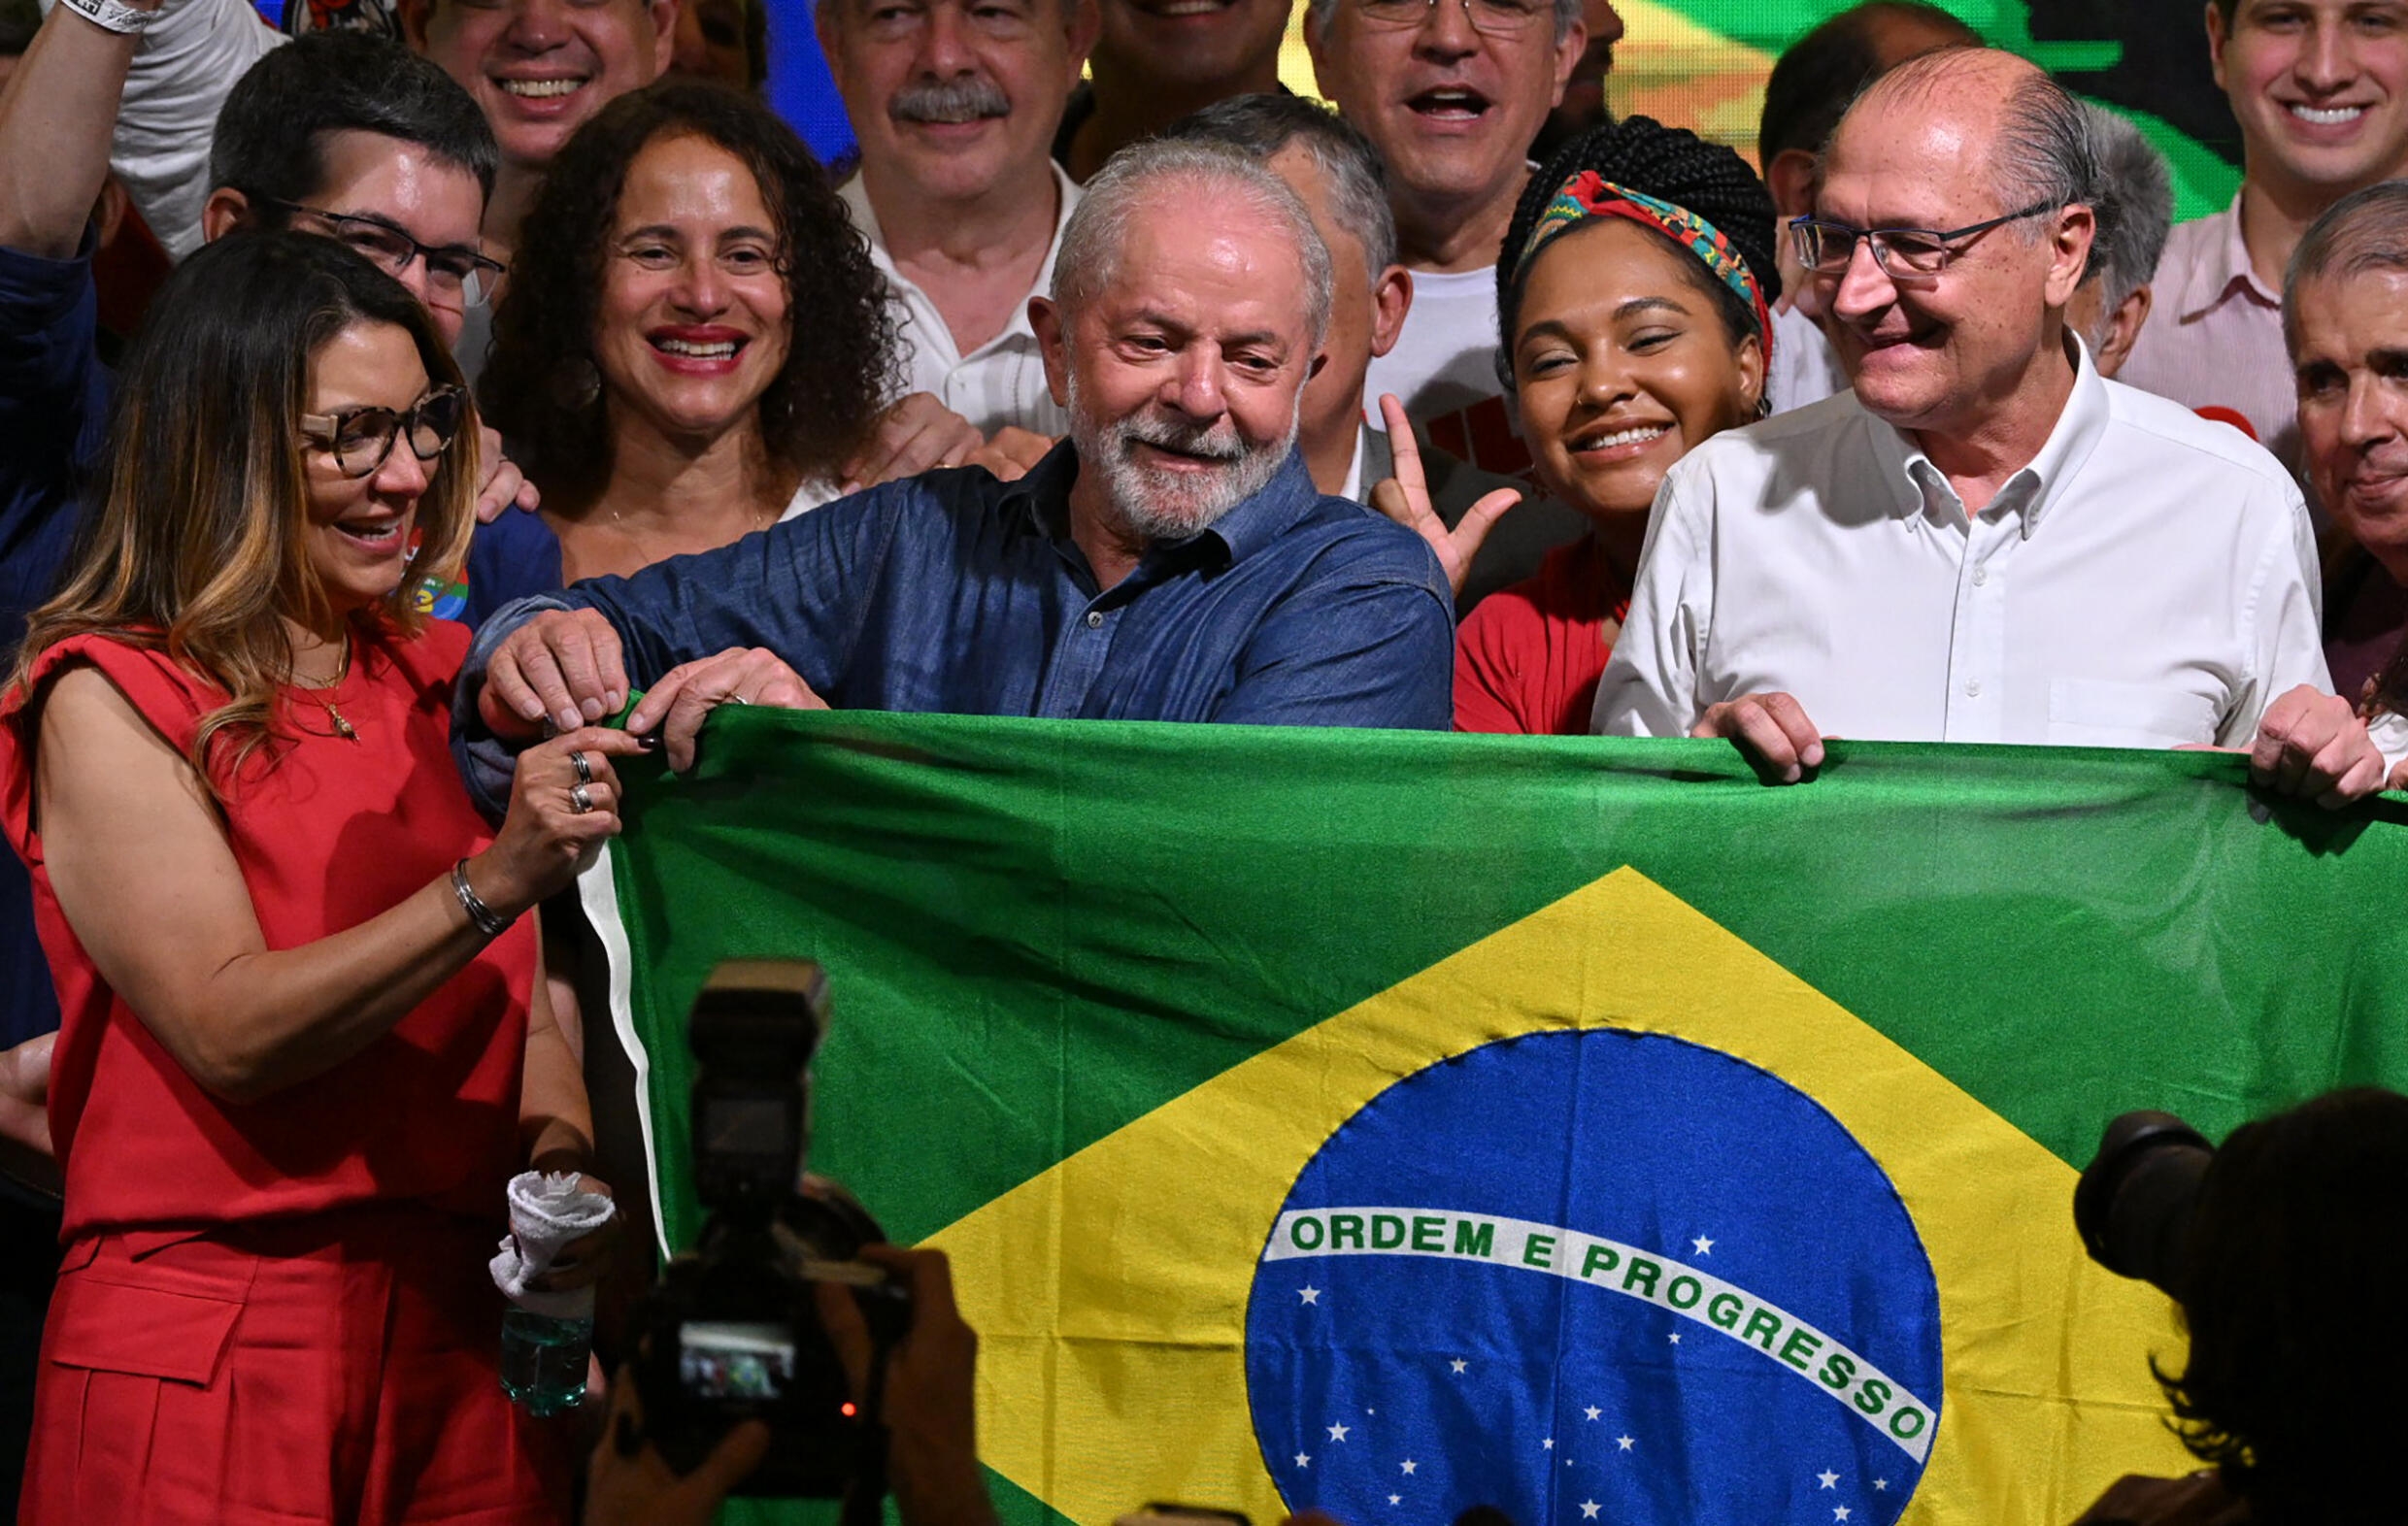 Anaïs Fléchet, historienne : "La victoire de Lula est un soulagement pour le camp démocratique" (France 24 FR)